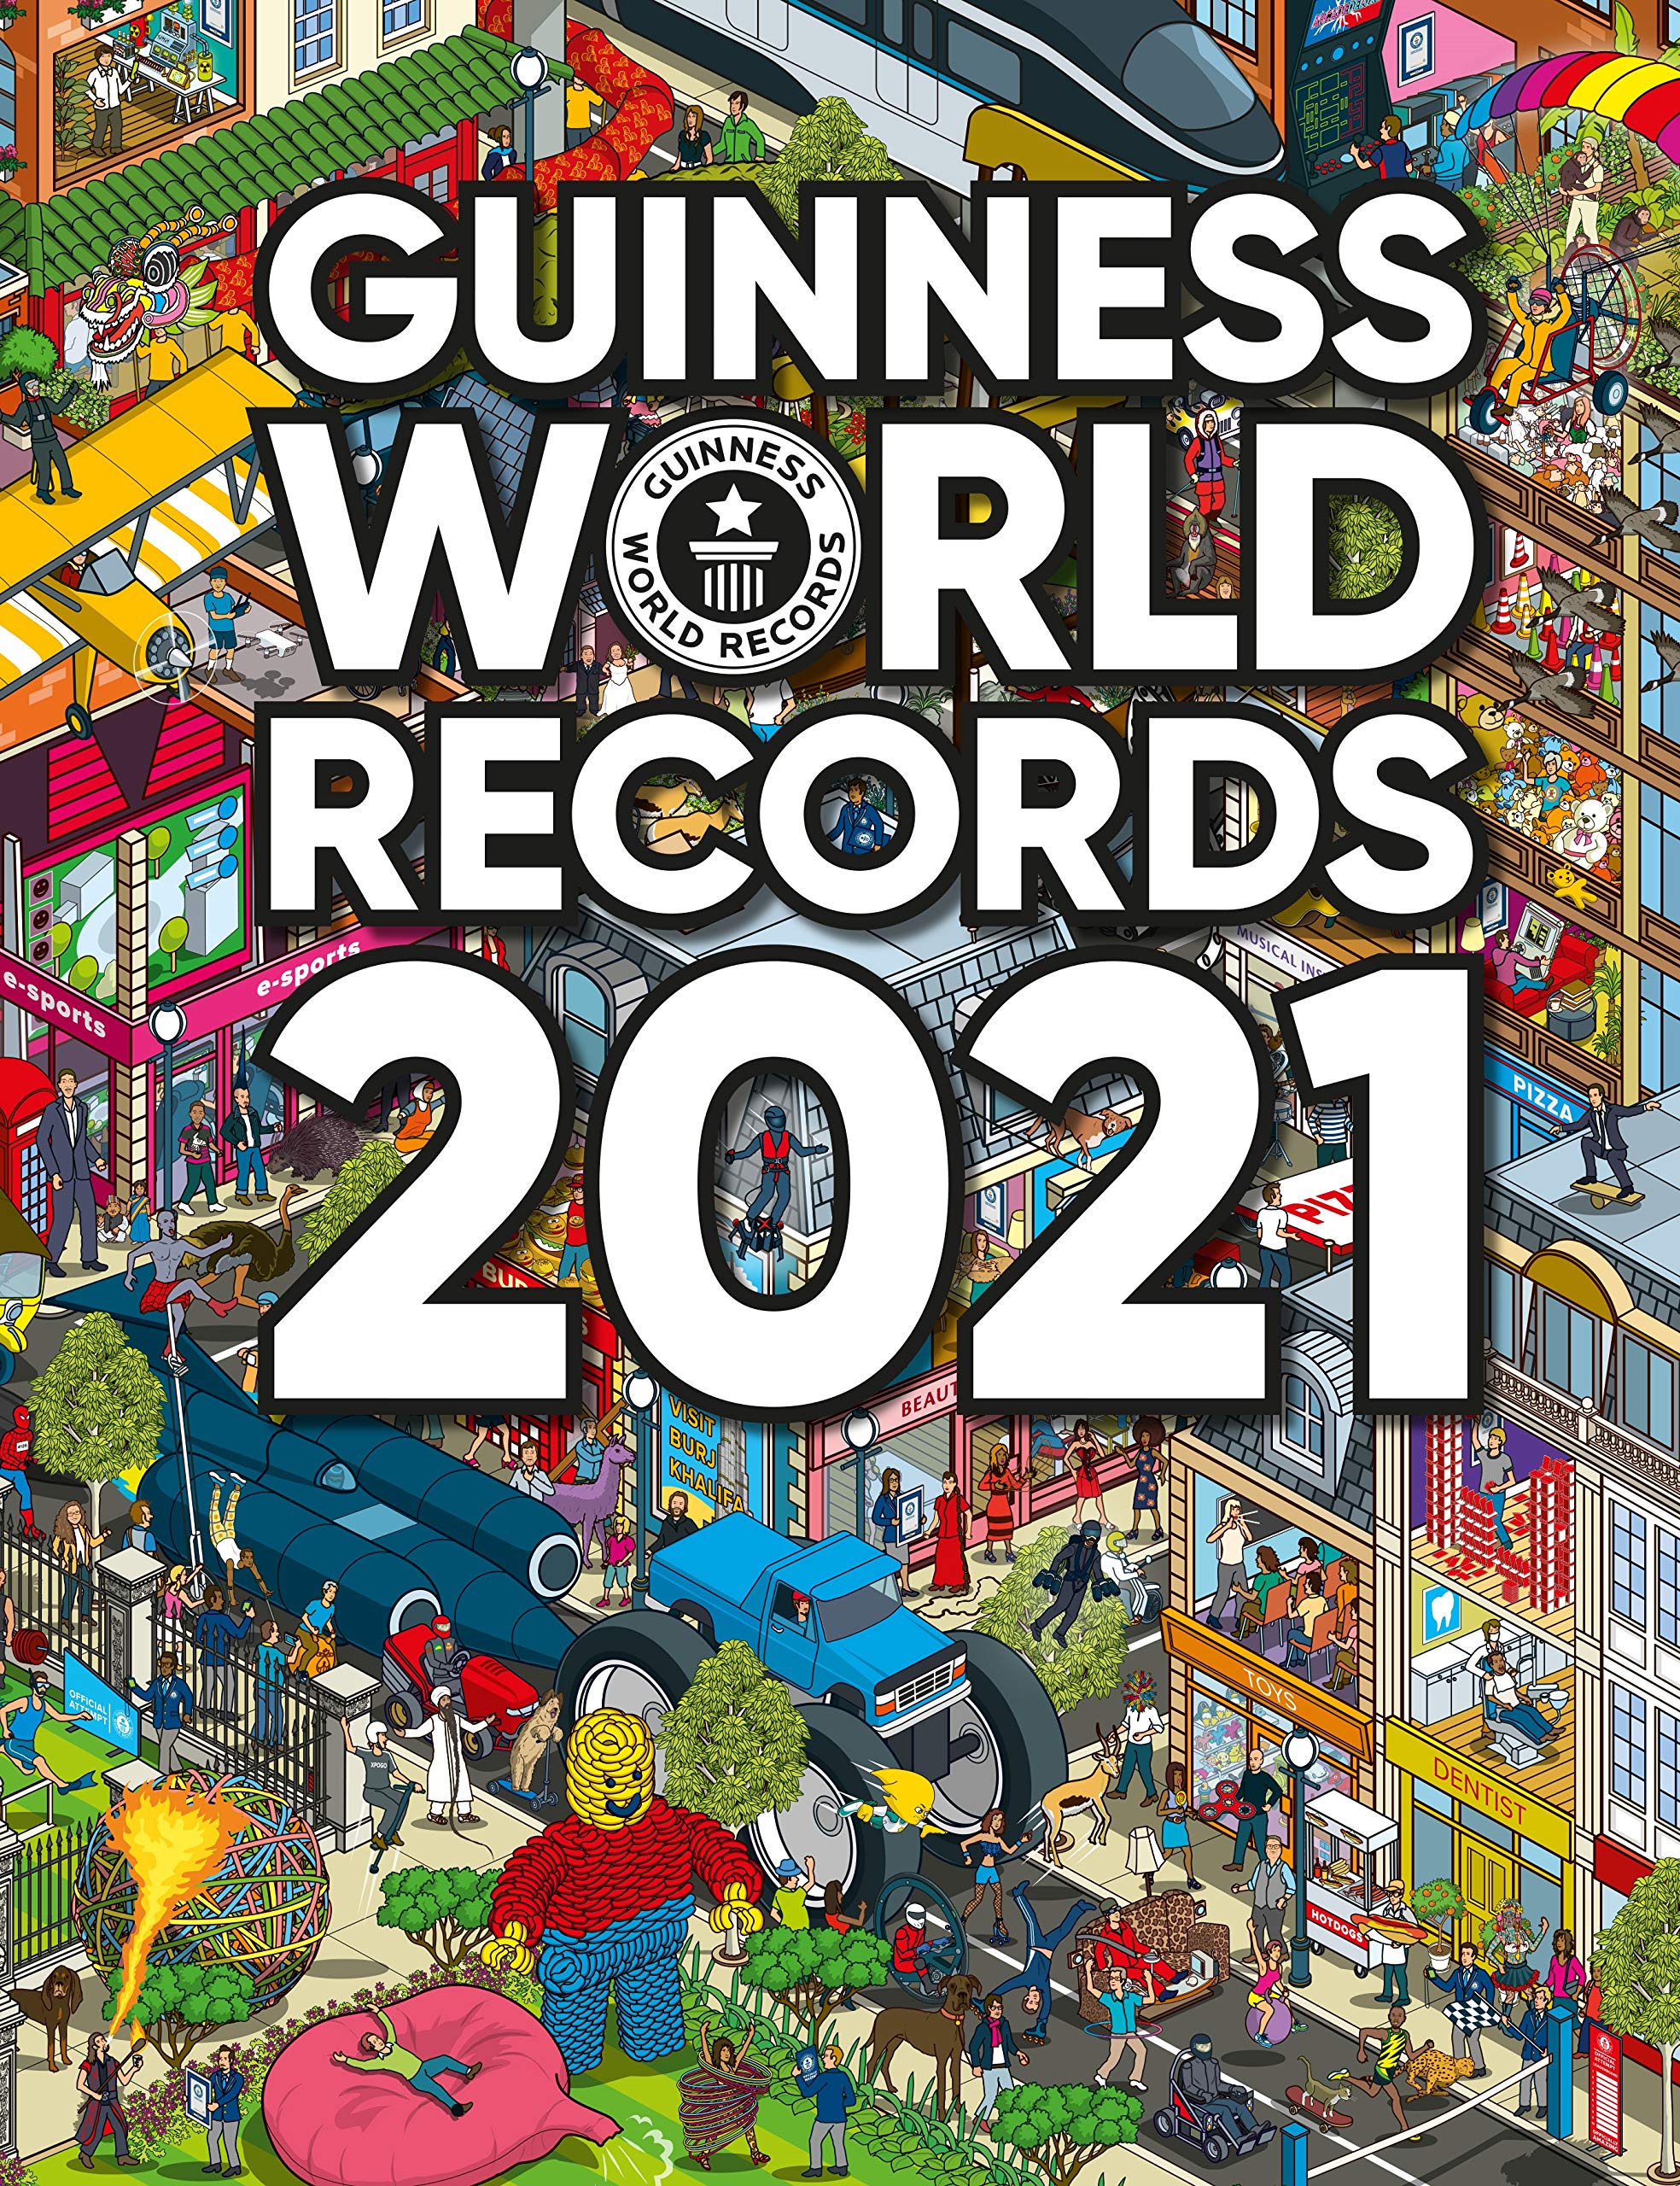 Hong Kong book shop Guinness World Records 2021 (Publication date: September 17, 2020)